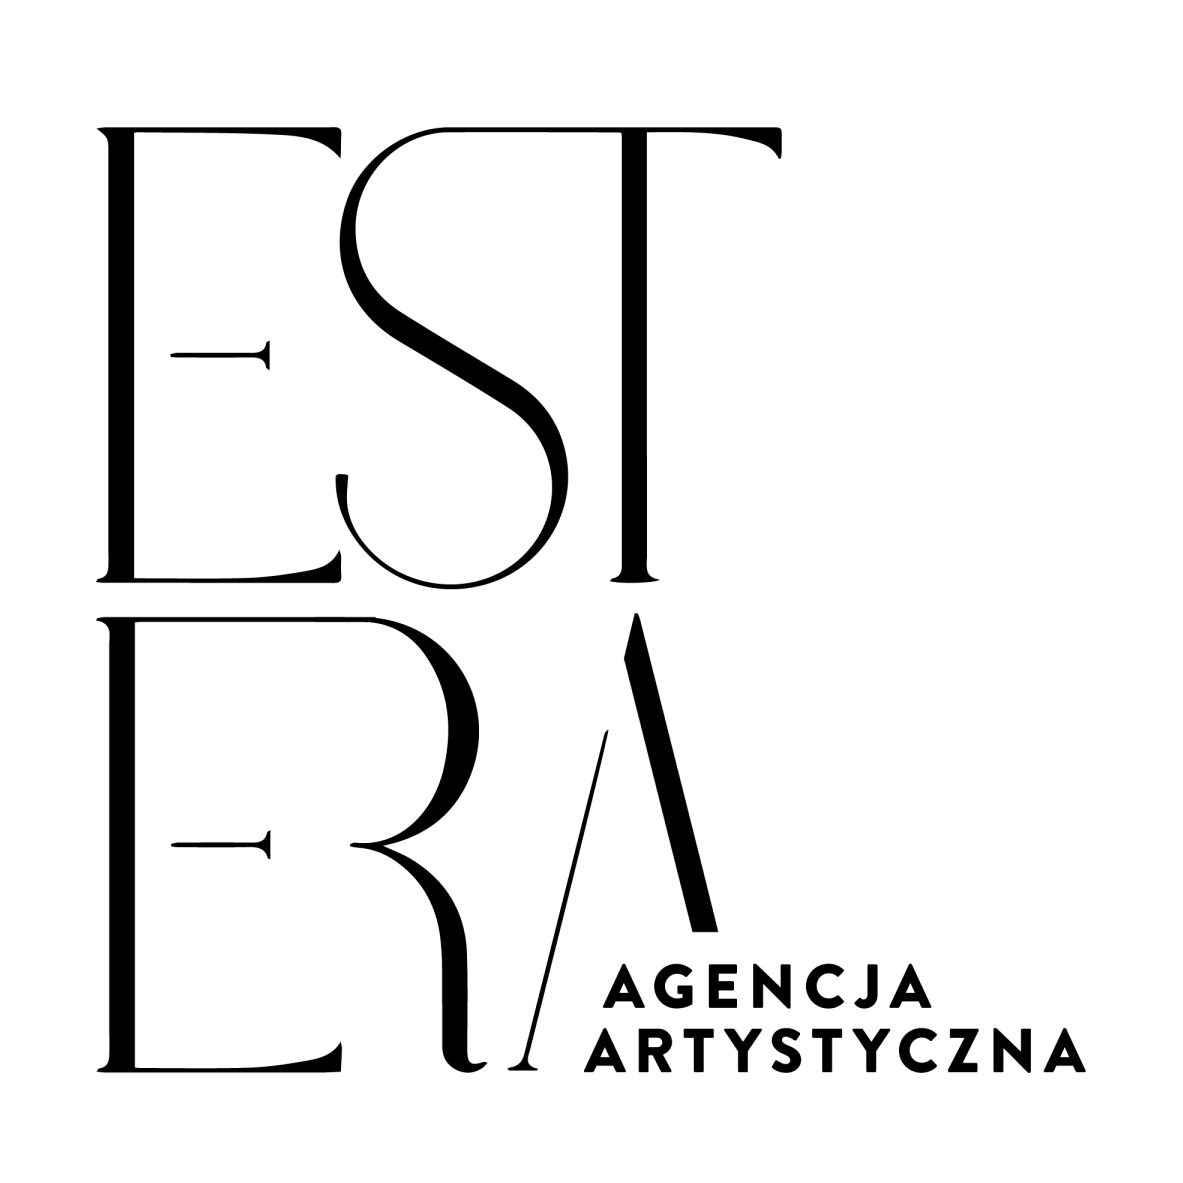 Agencja artystyczna Est Era